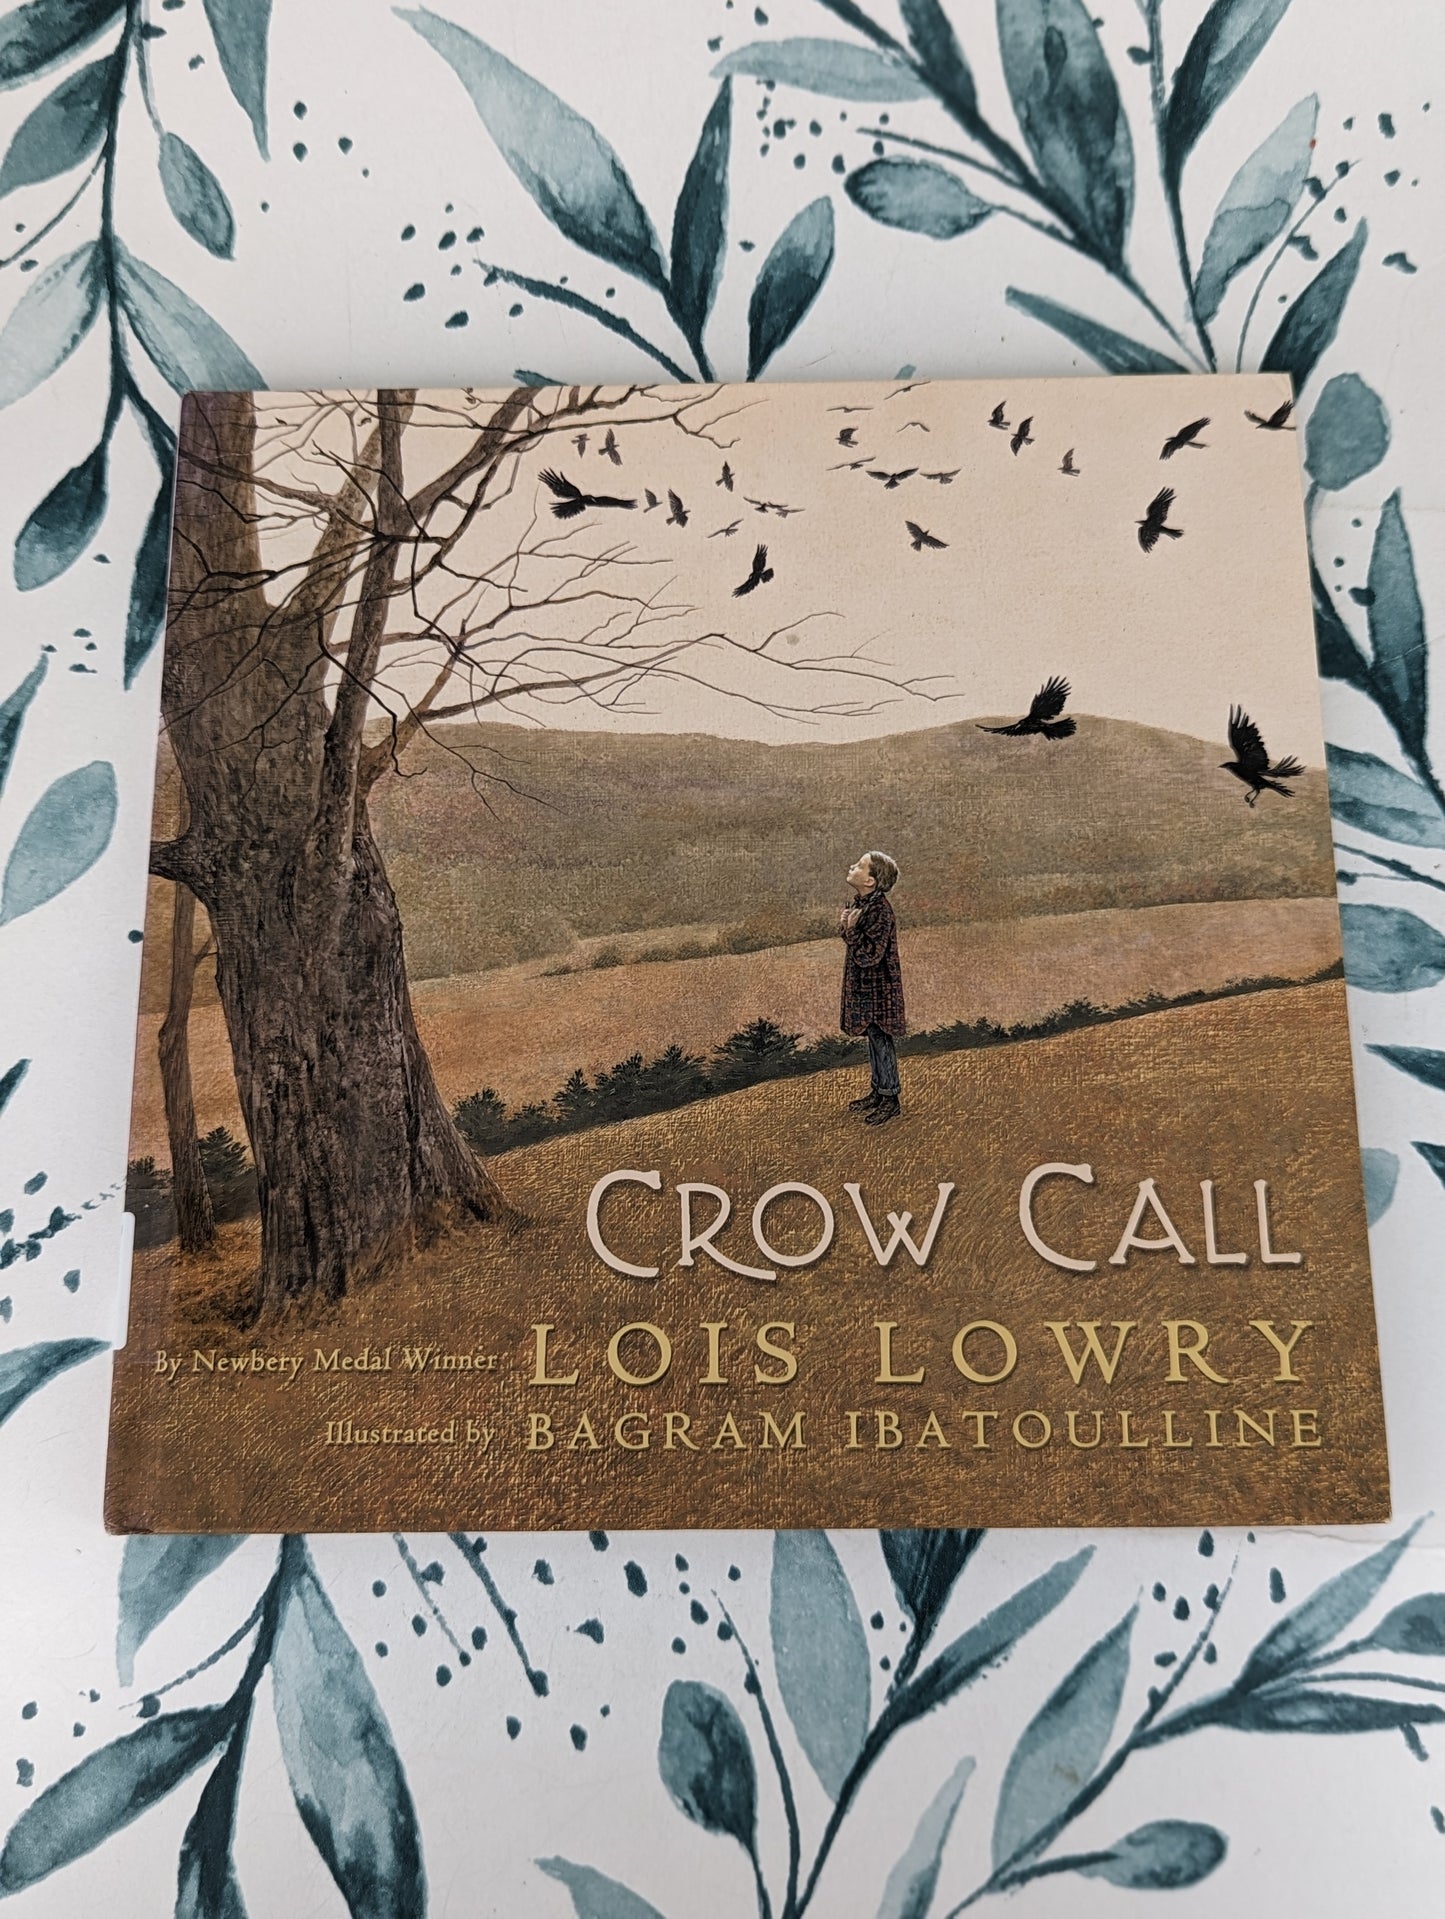 Crow Call